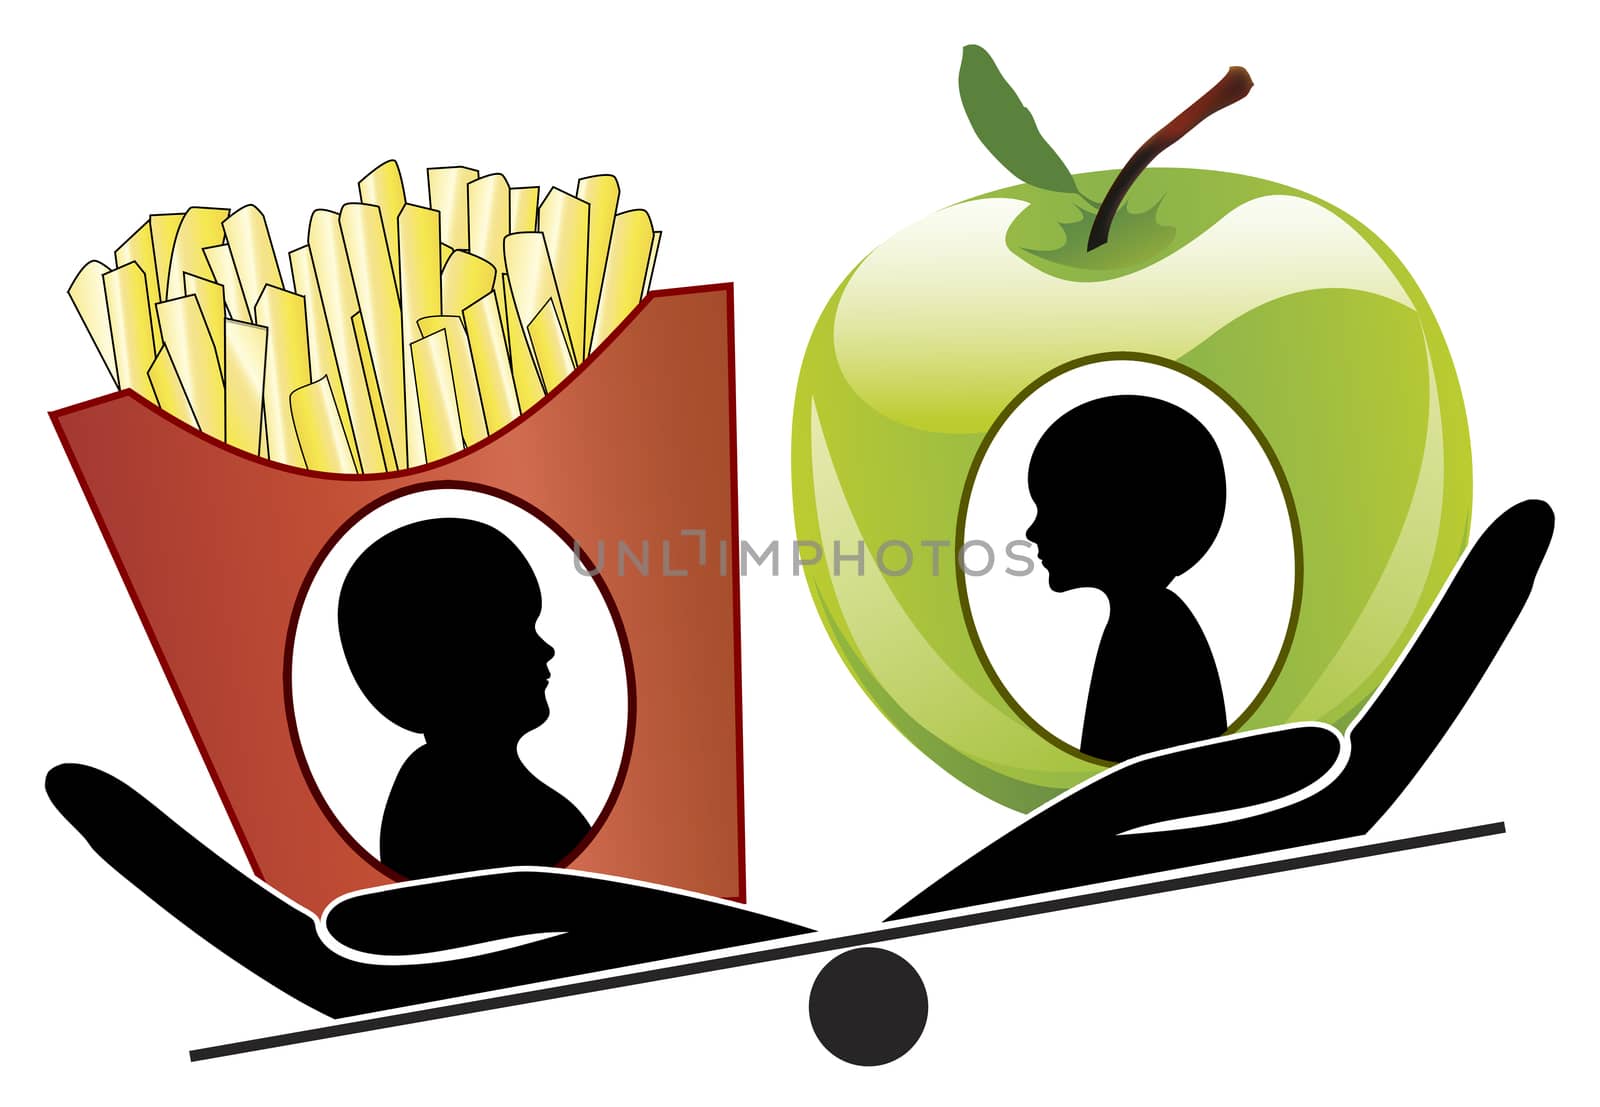 Healthy food for kids versus junk food